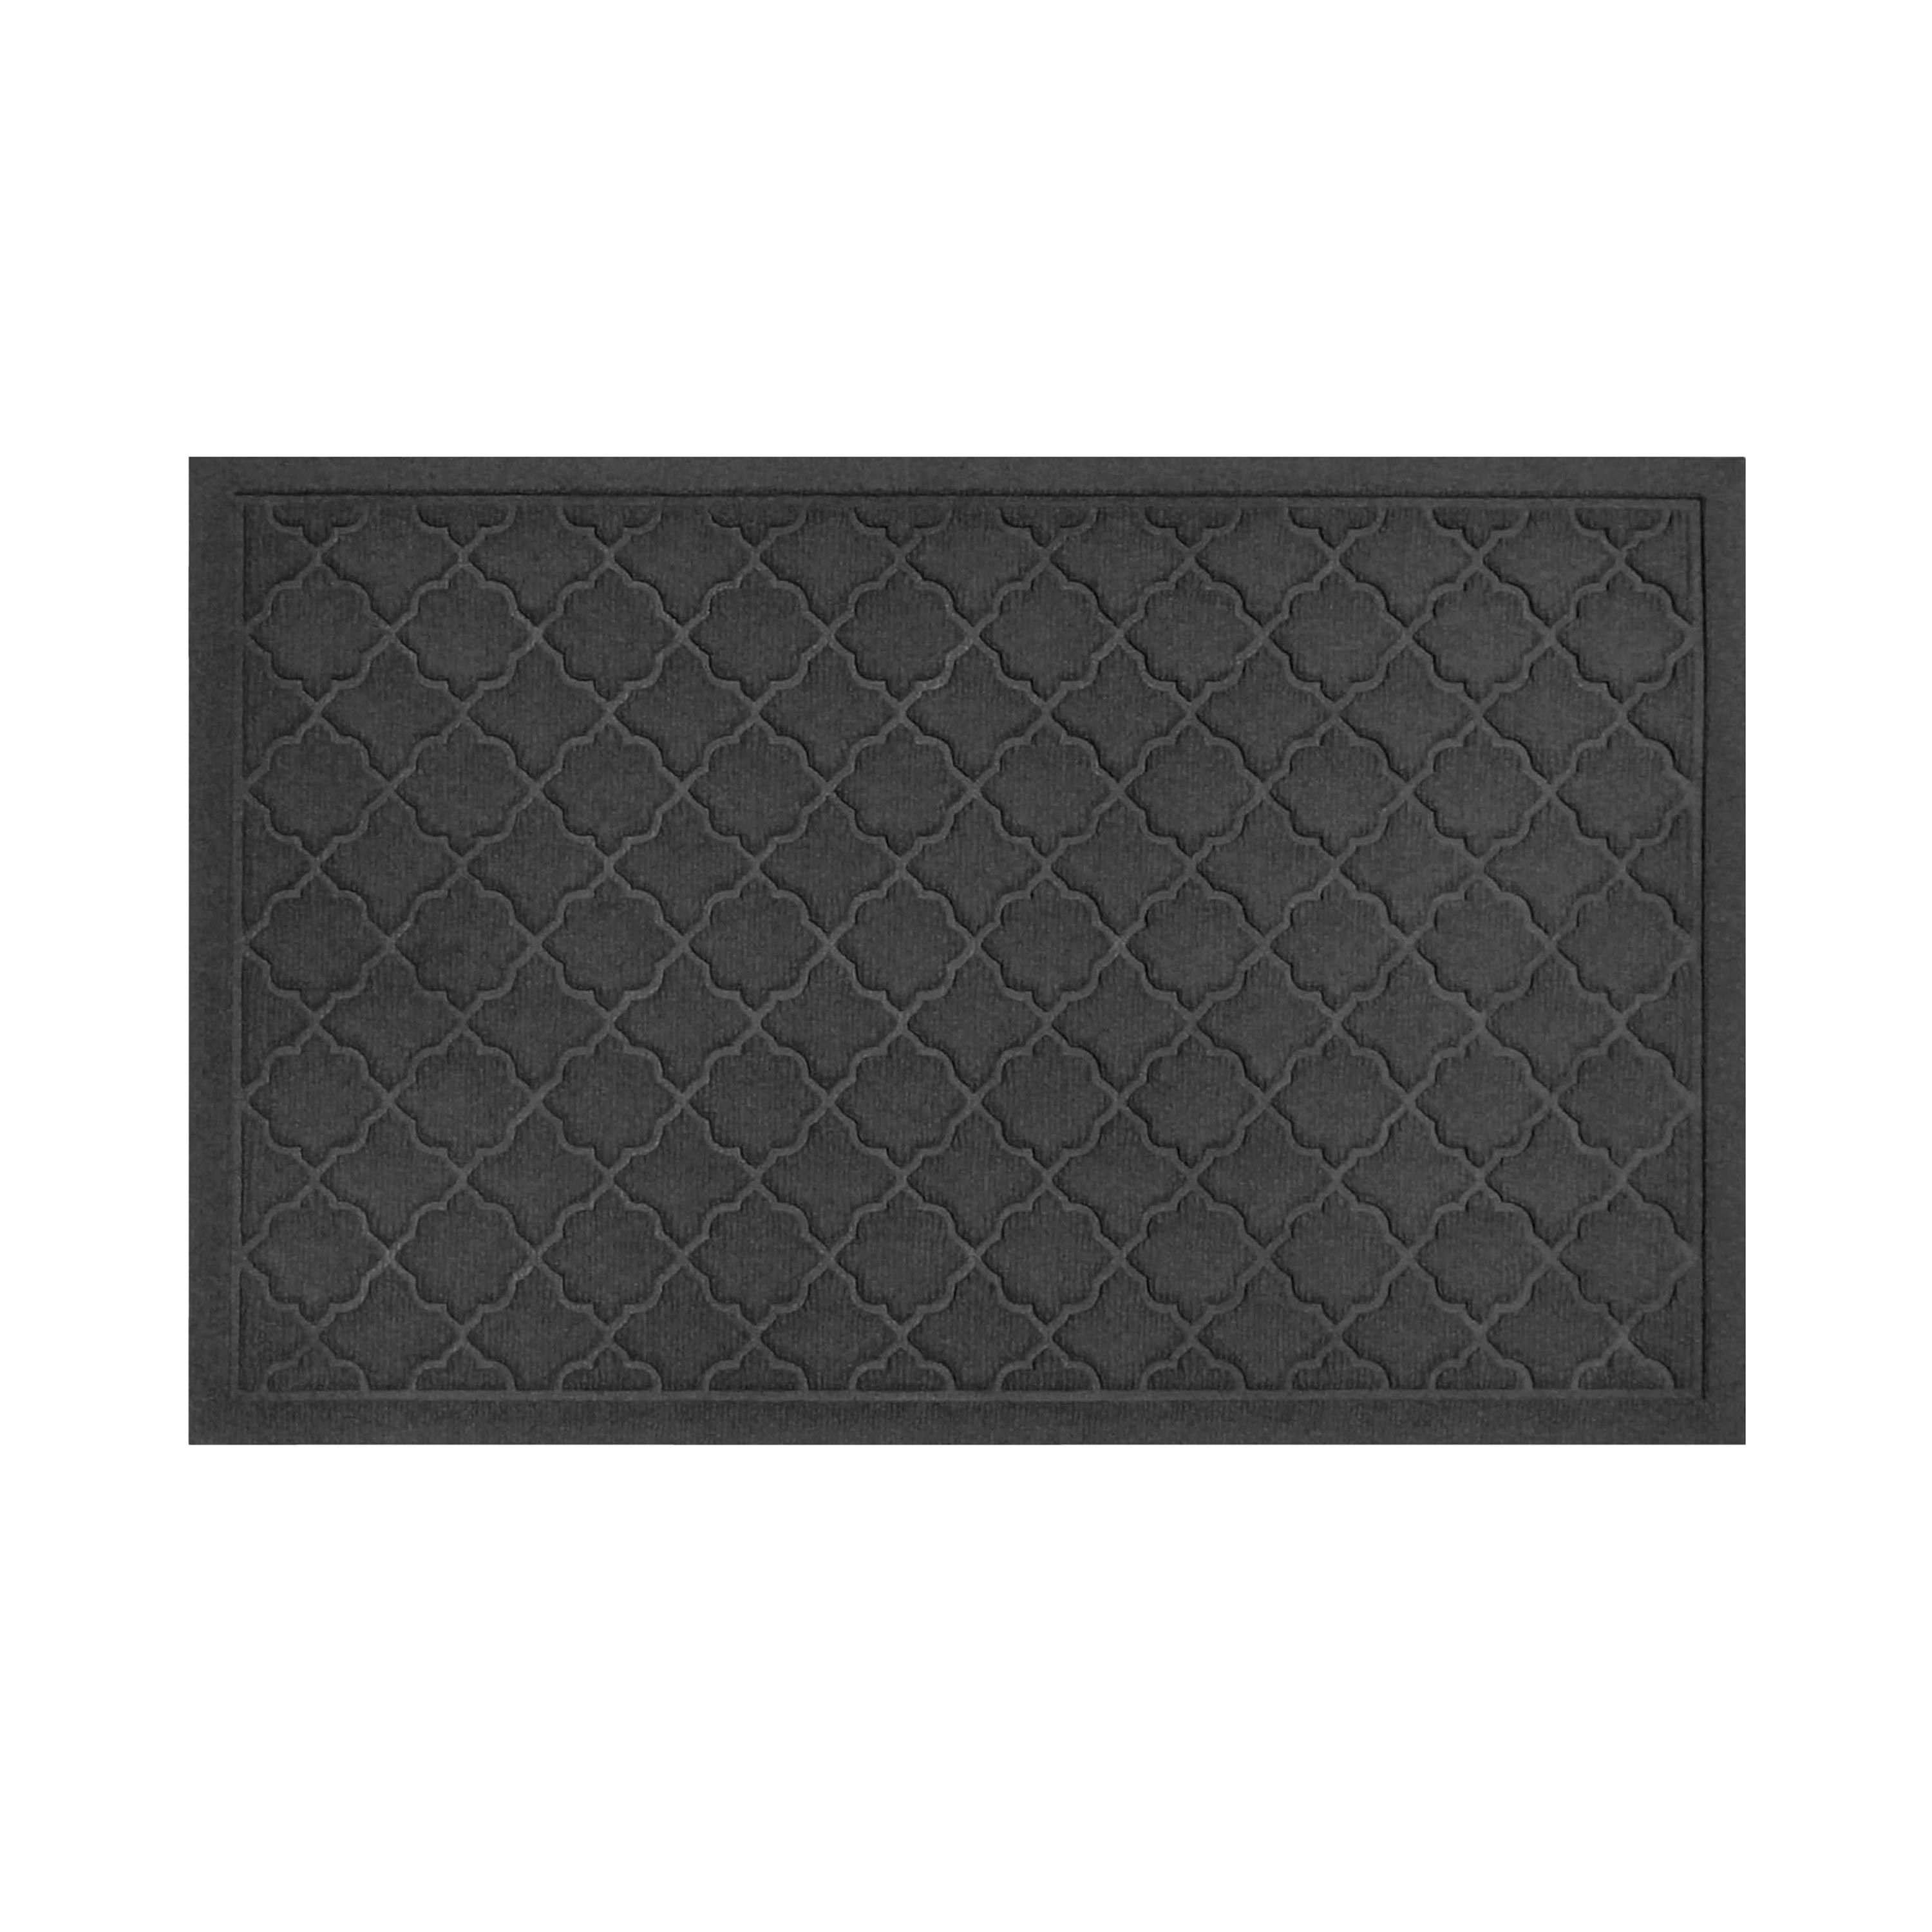 Waterhog Indoor/Outdoor Geometric Doormat, 22" x 60" - Charcoal